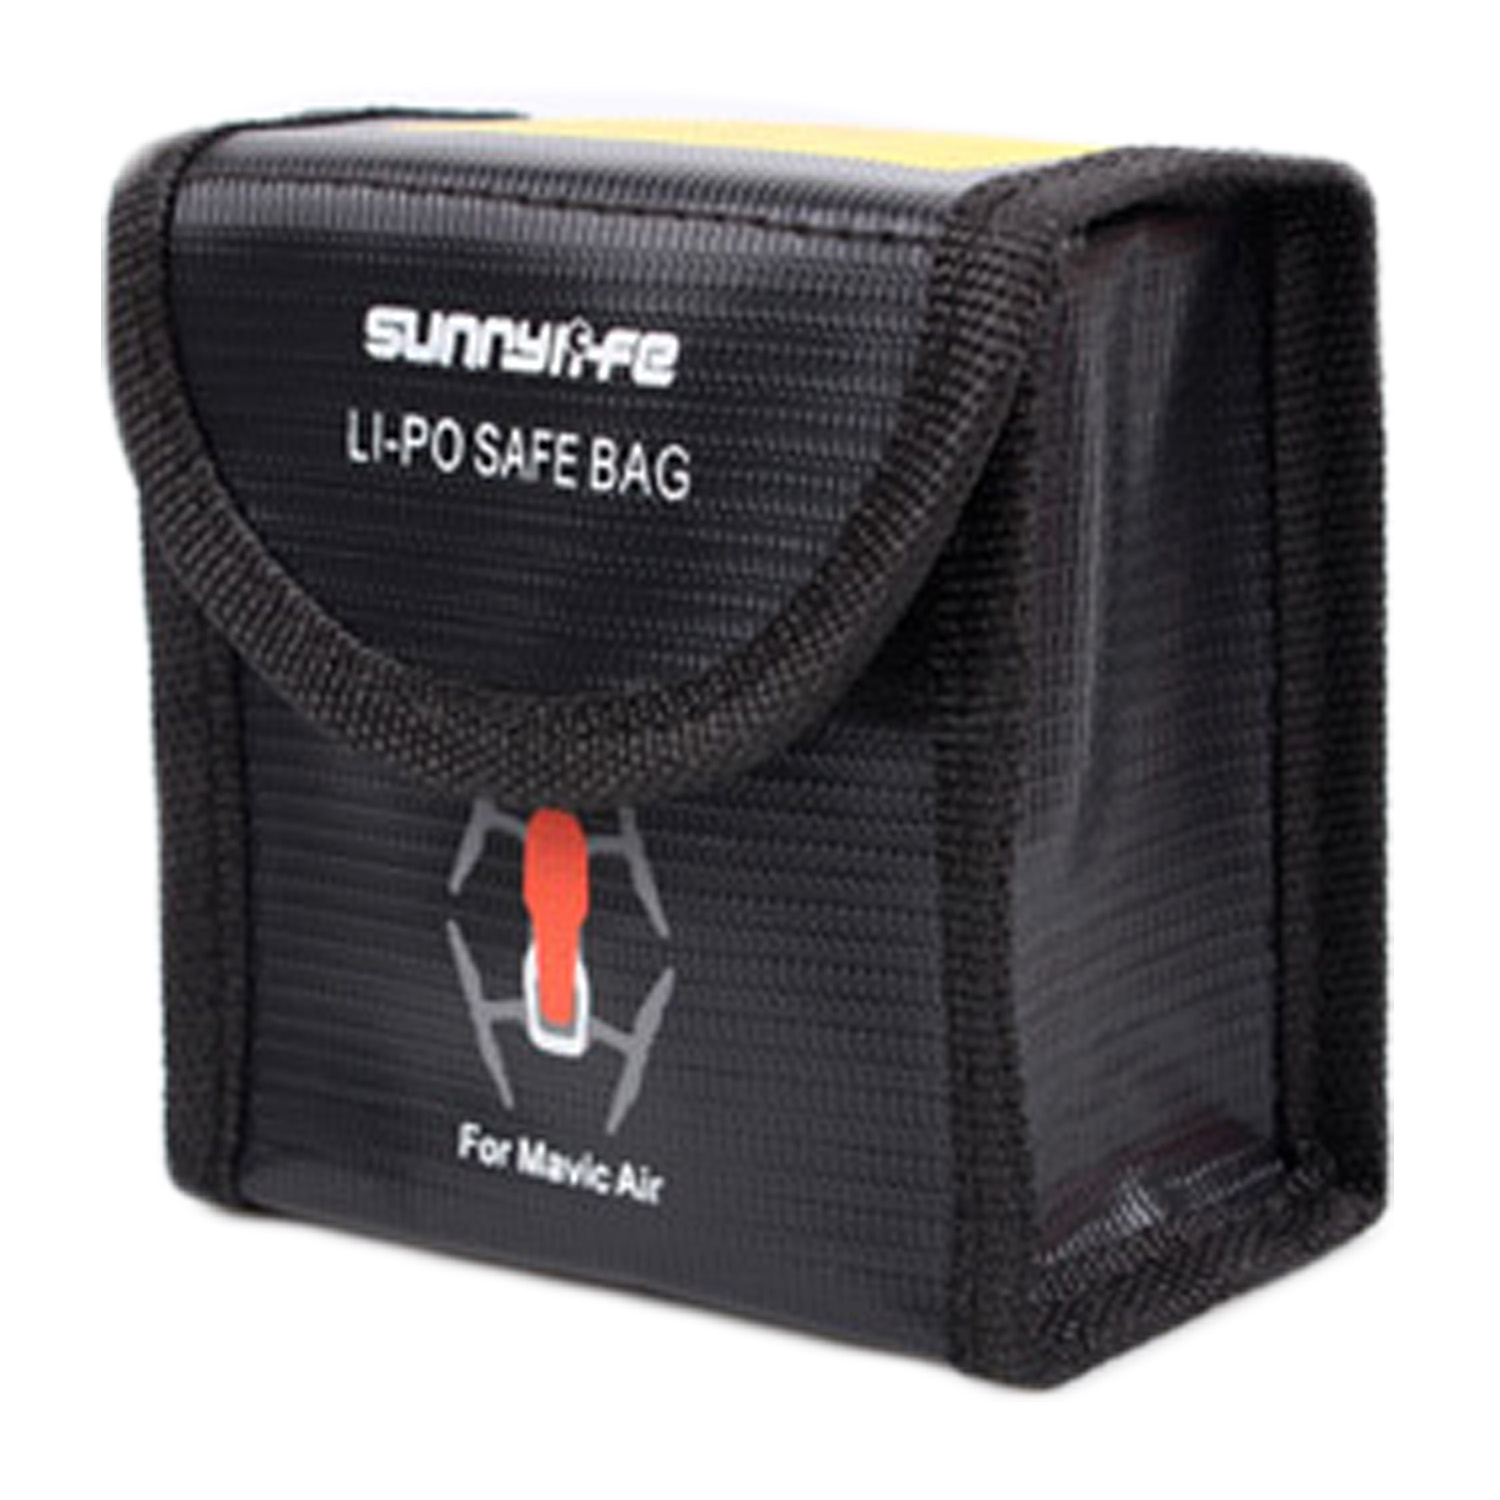 DJI Mavic Air - Dual Lipo Safety Battery Bag